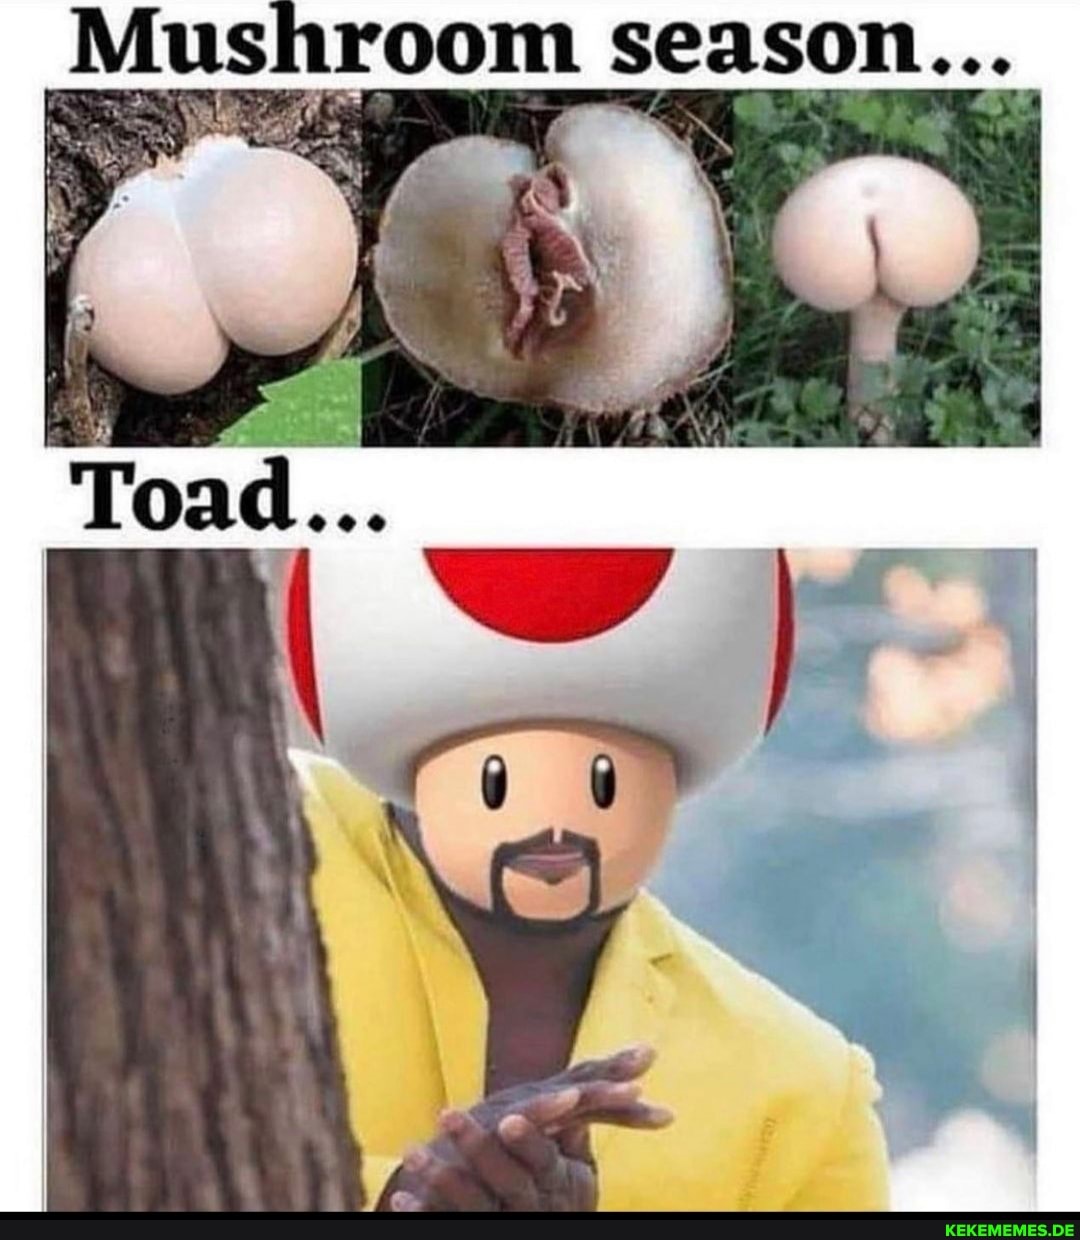 Mushroom season...